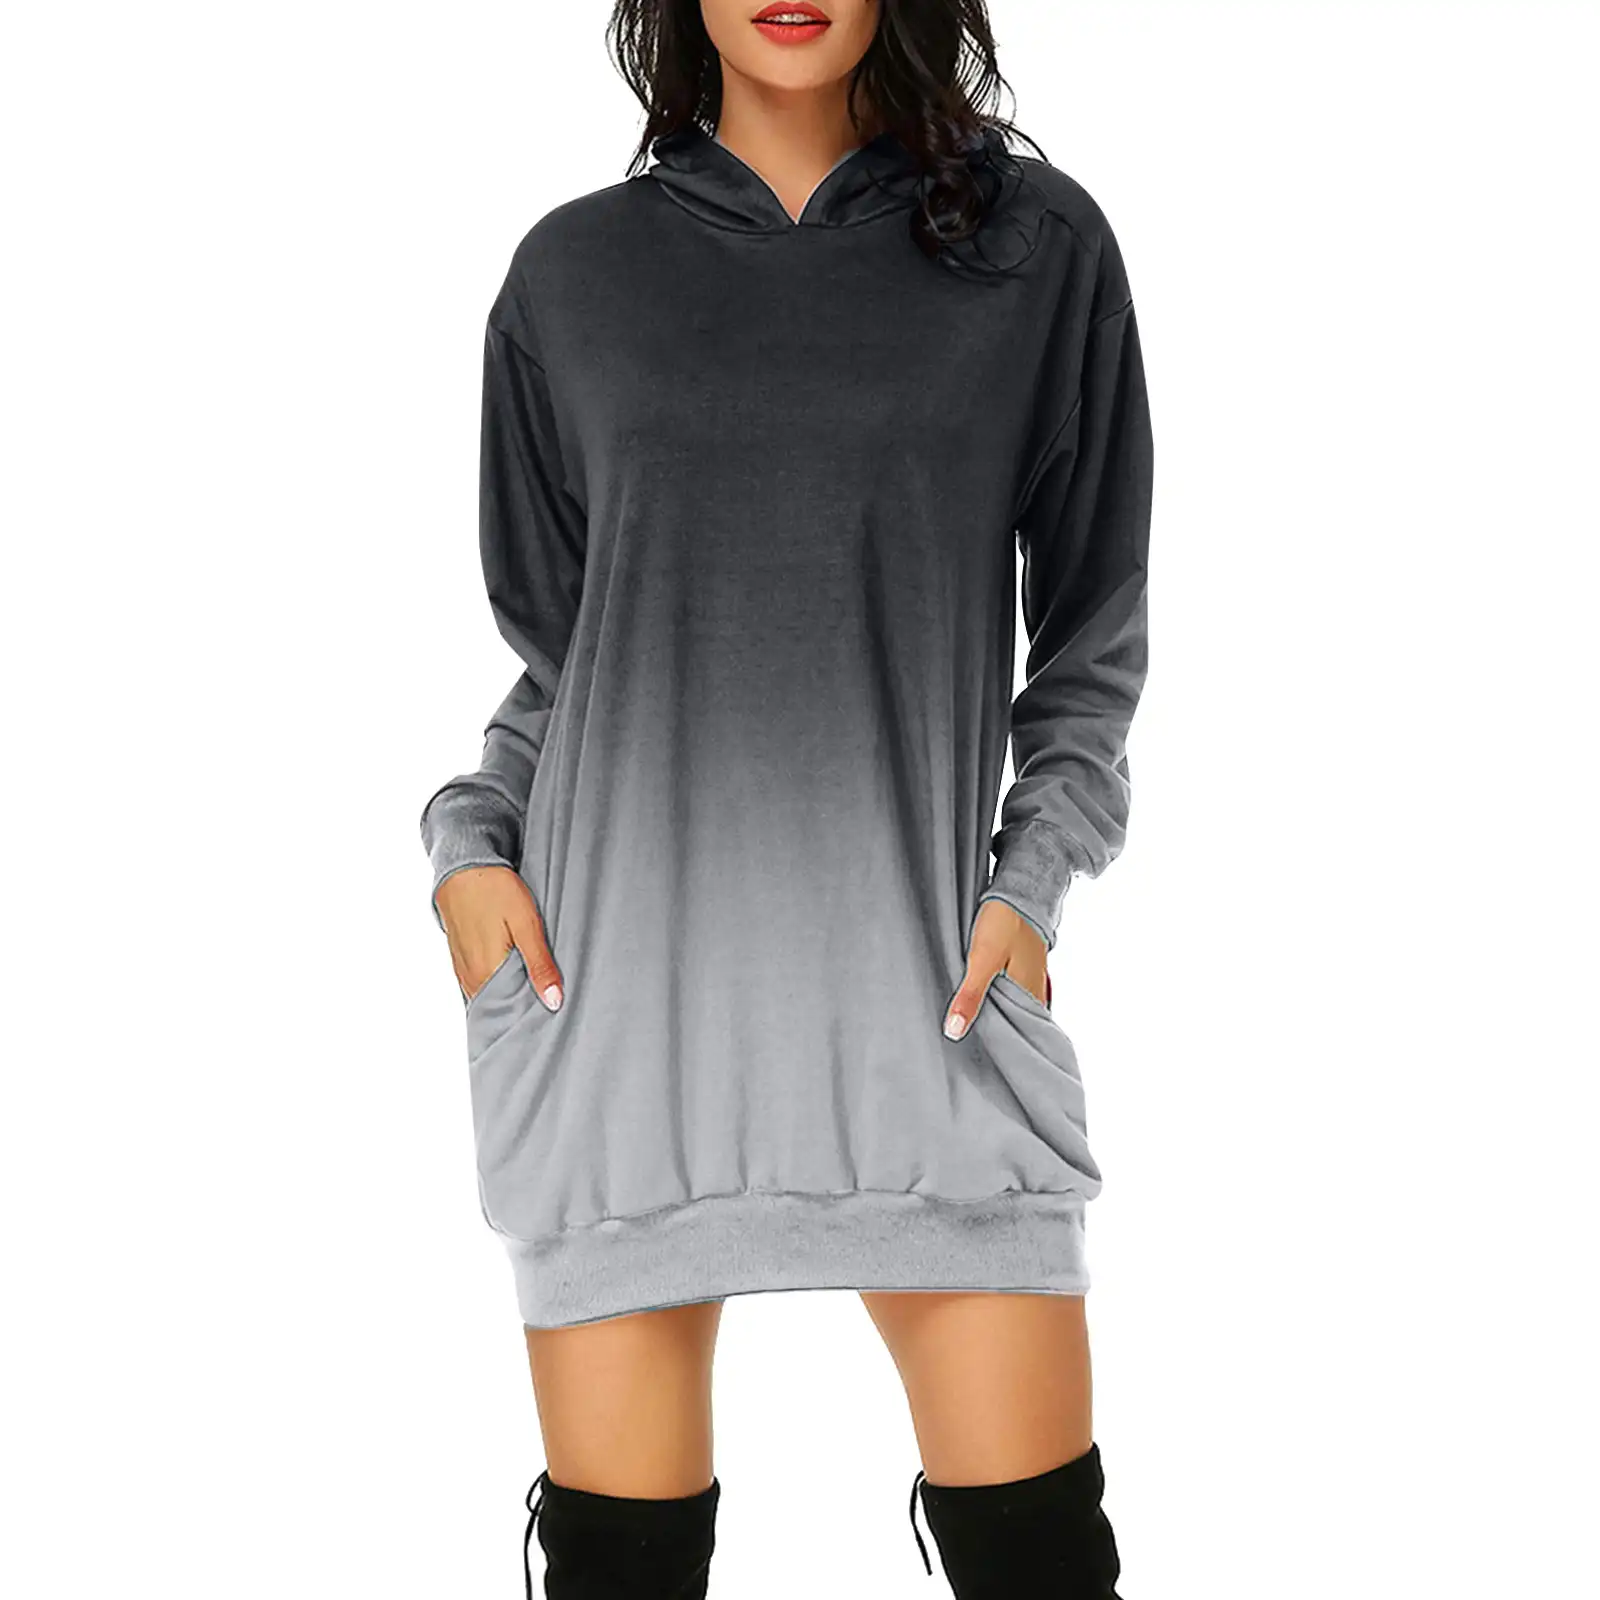 Benutzer definierte Farbverlauf Damen Print Long Hoodie Hooded Strickkleid Plus Size Frauen Casual Sweatshirt Taschen Pullover Kleid